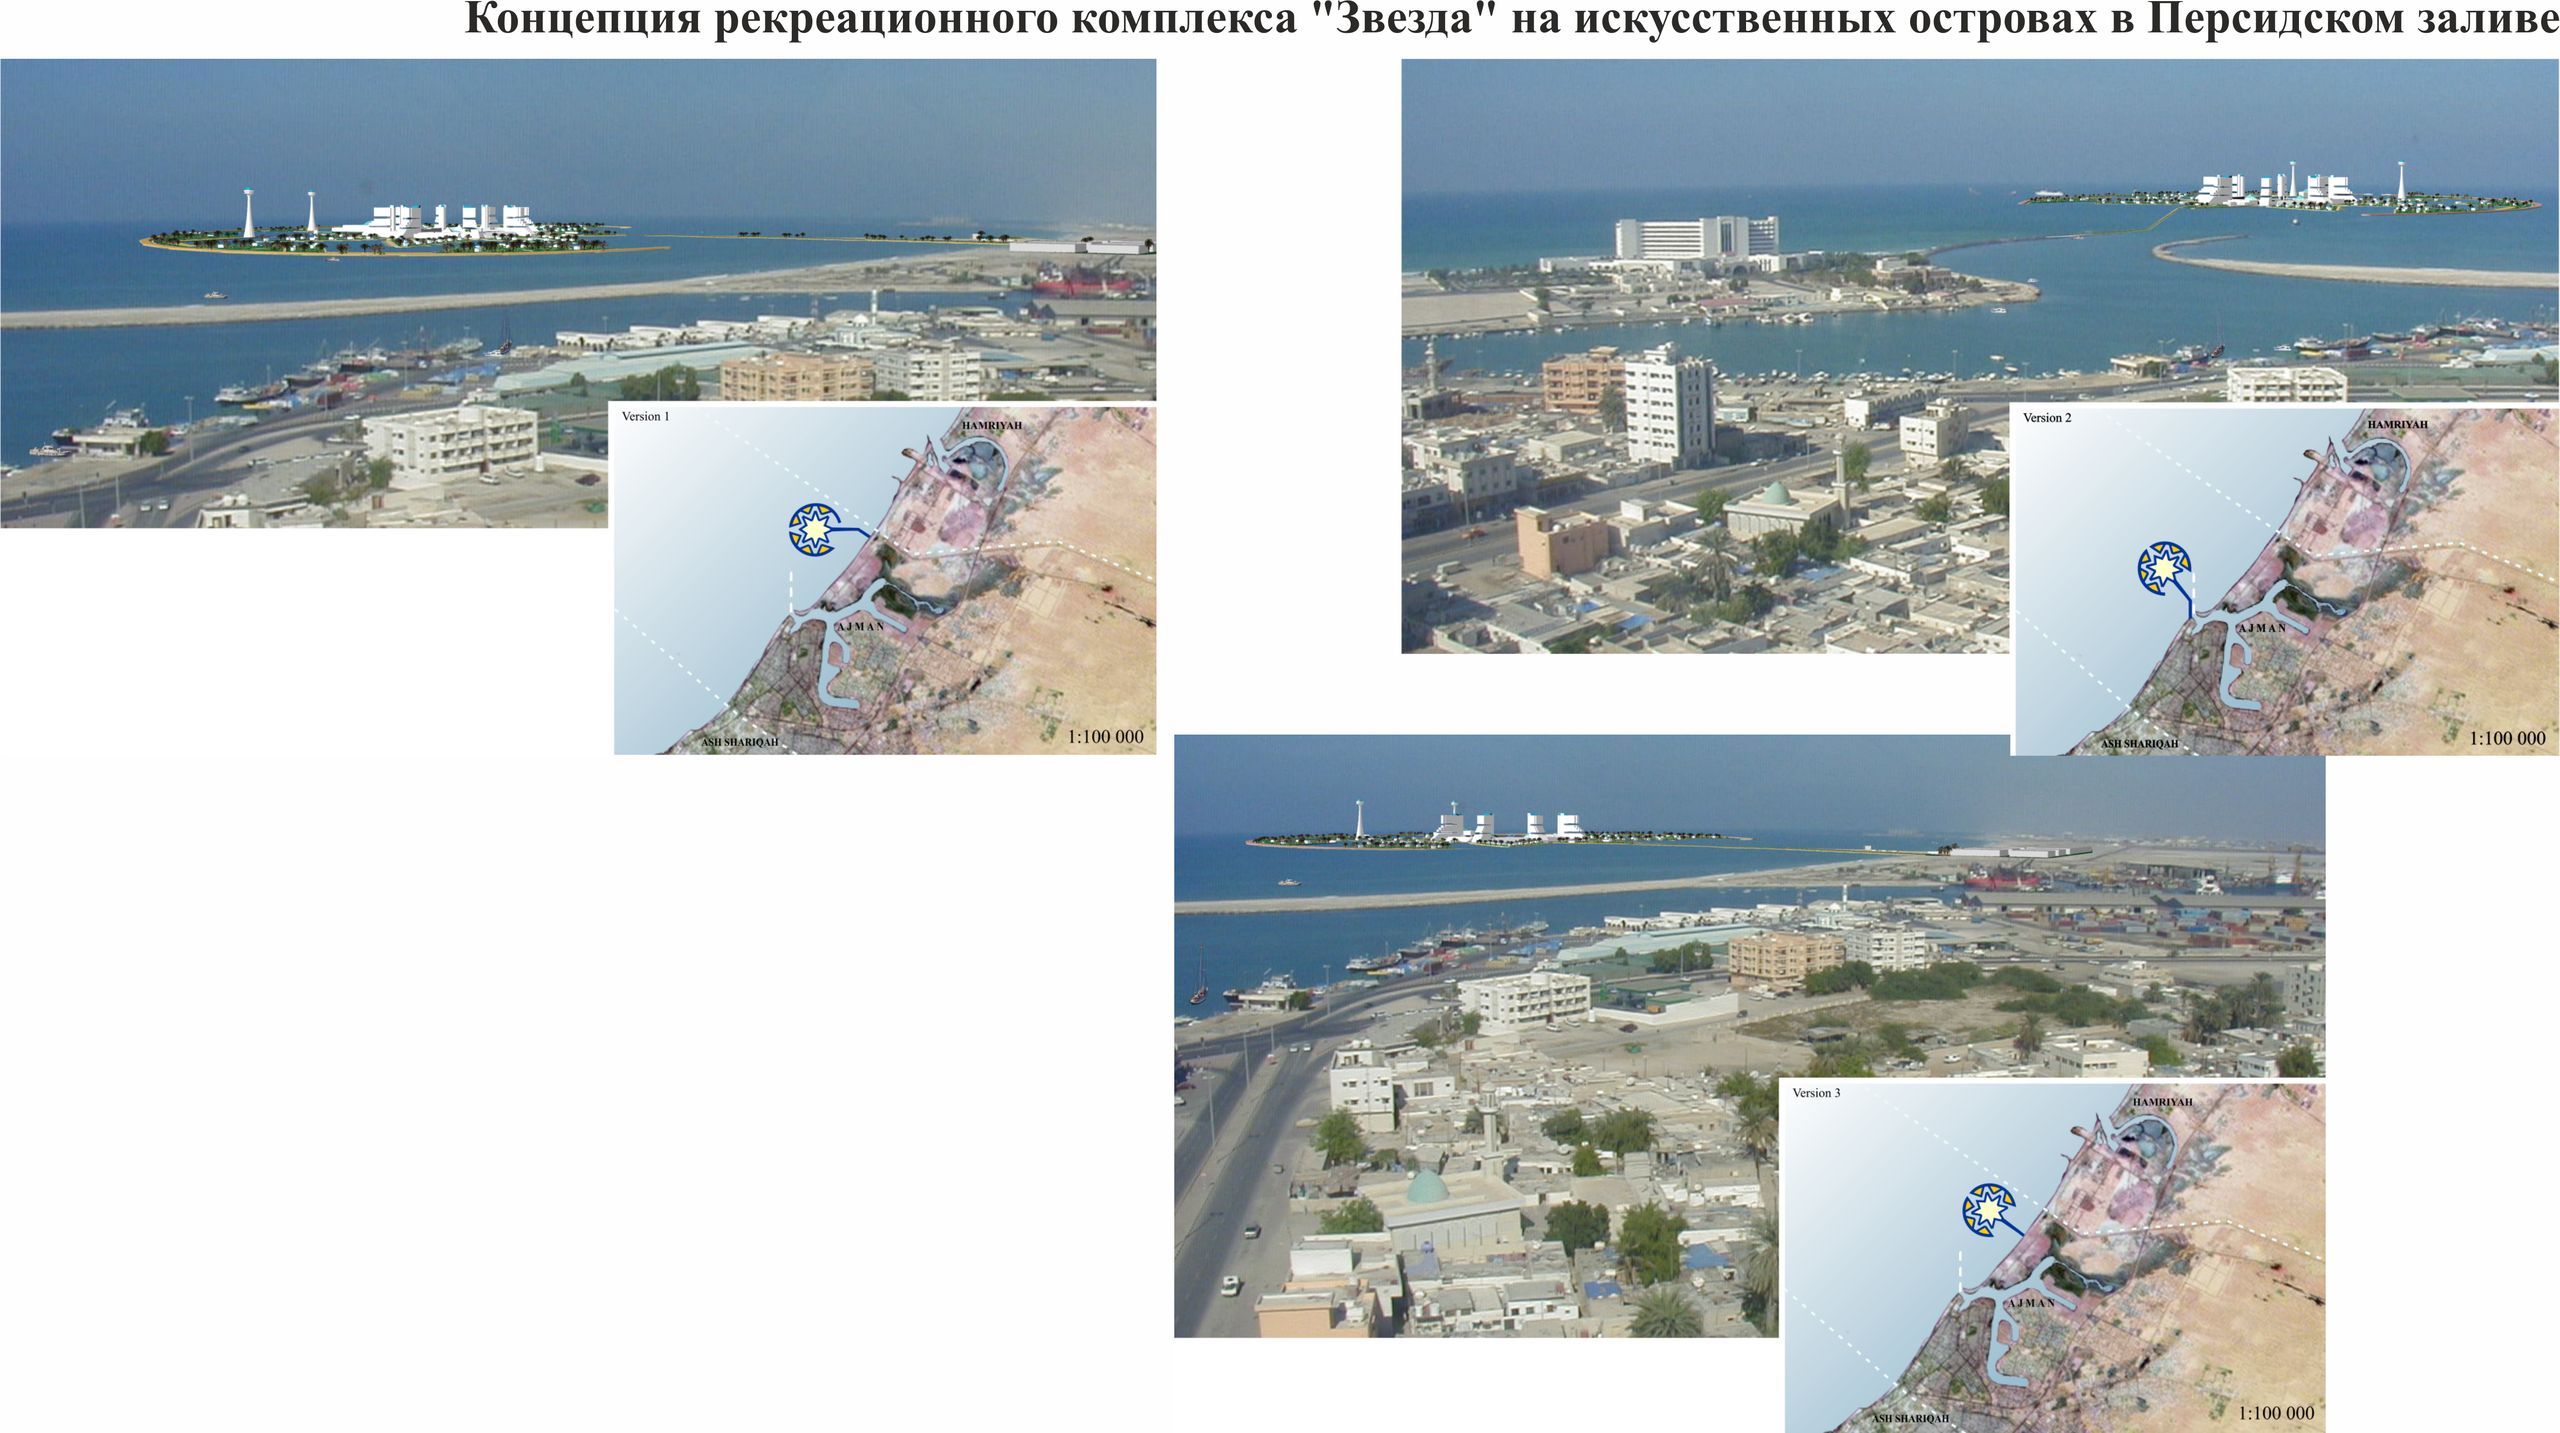 Концепция рекреационного комплекса «Звезда» на искусственных островах в Персидском заливе